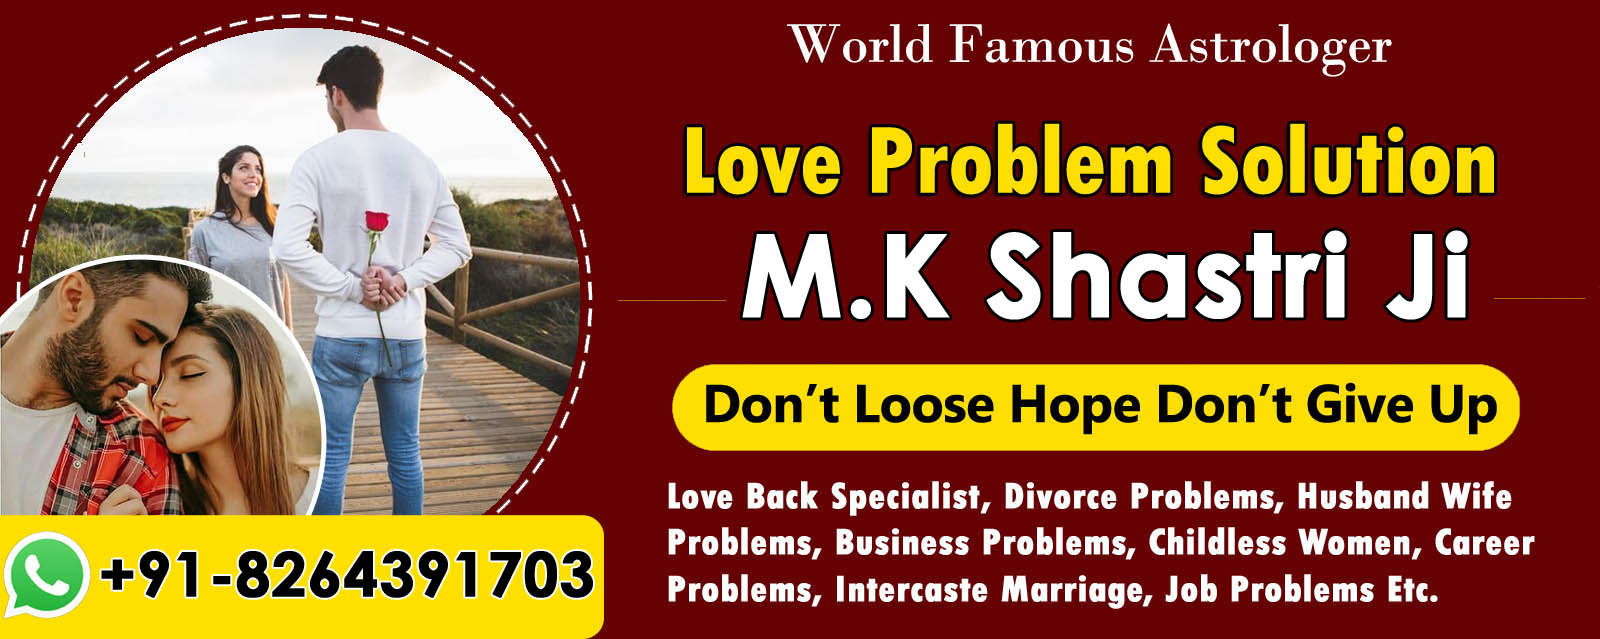 World Famous Astrologer M.K Shastri Ji +91-8264391703